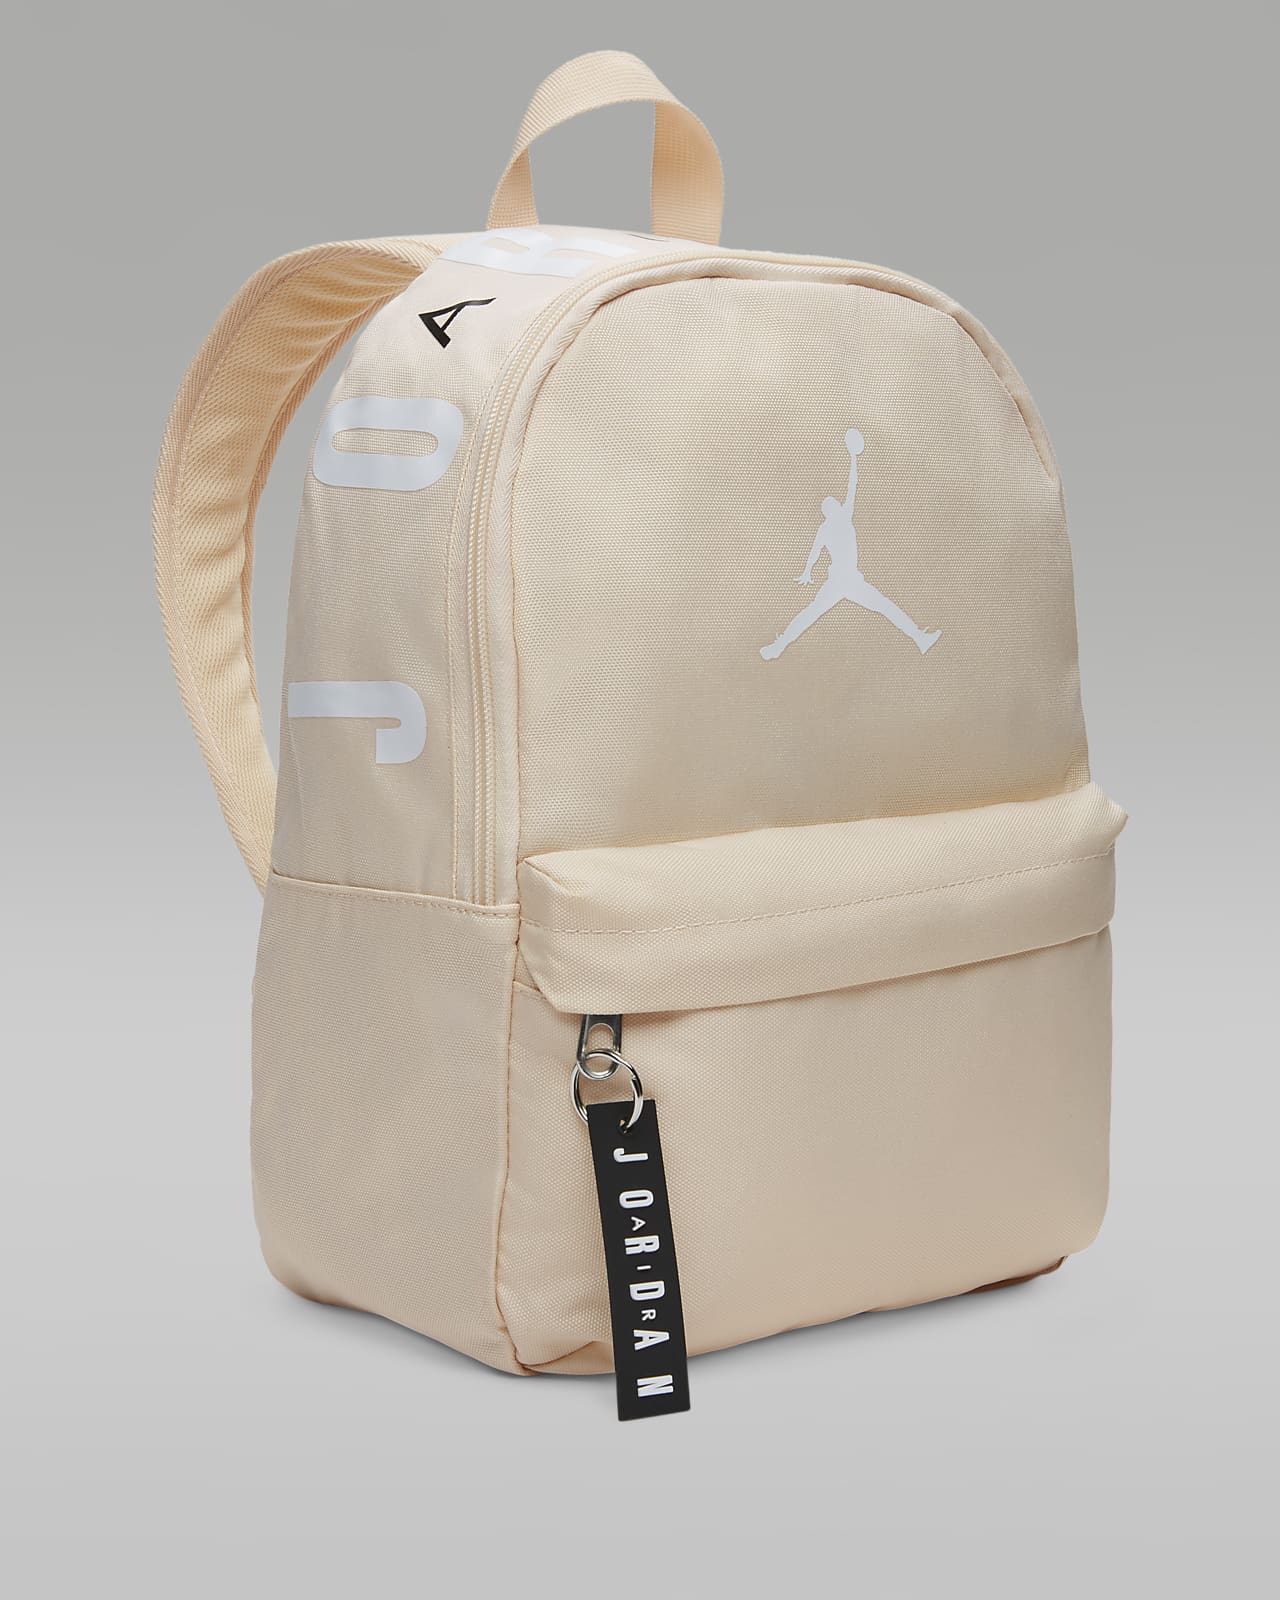 Nike Air Jordan Mini BackPack, Camo/Red, One Size